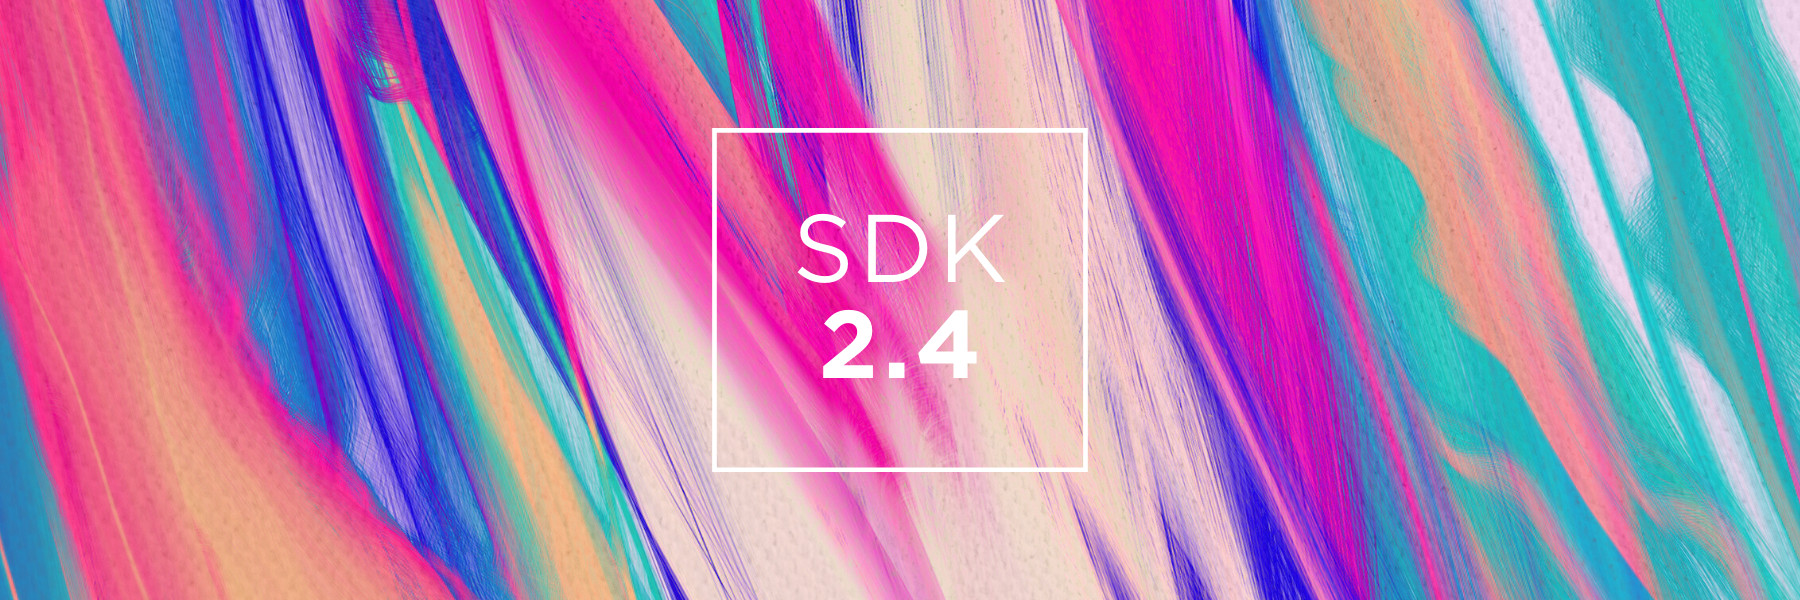 SDK 2.4: quality, reliability and simplicity